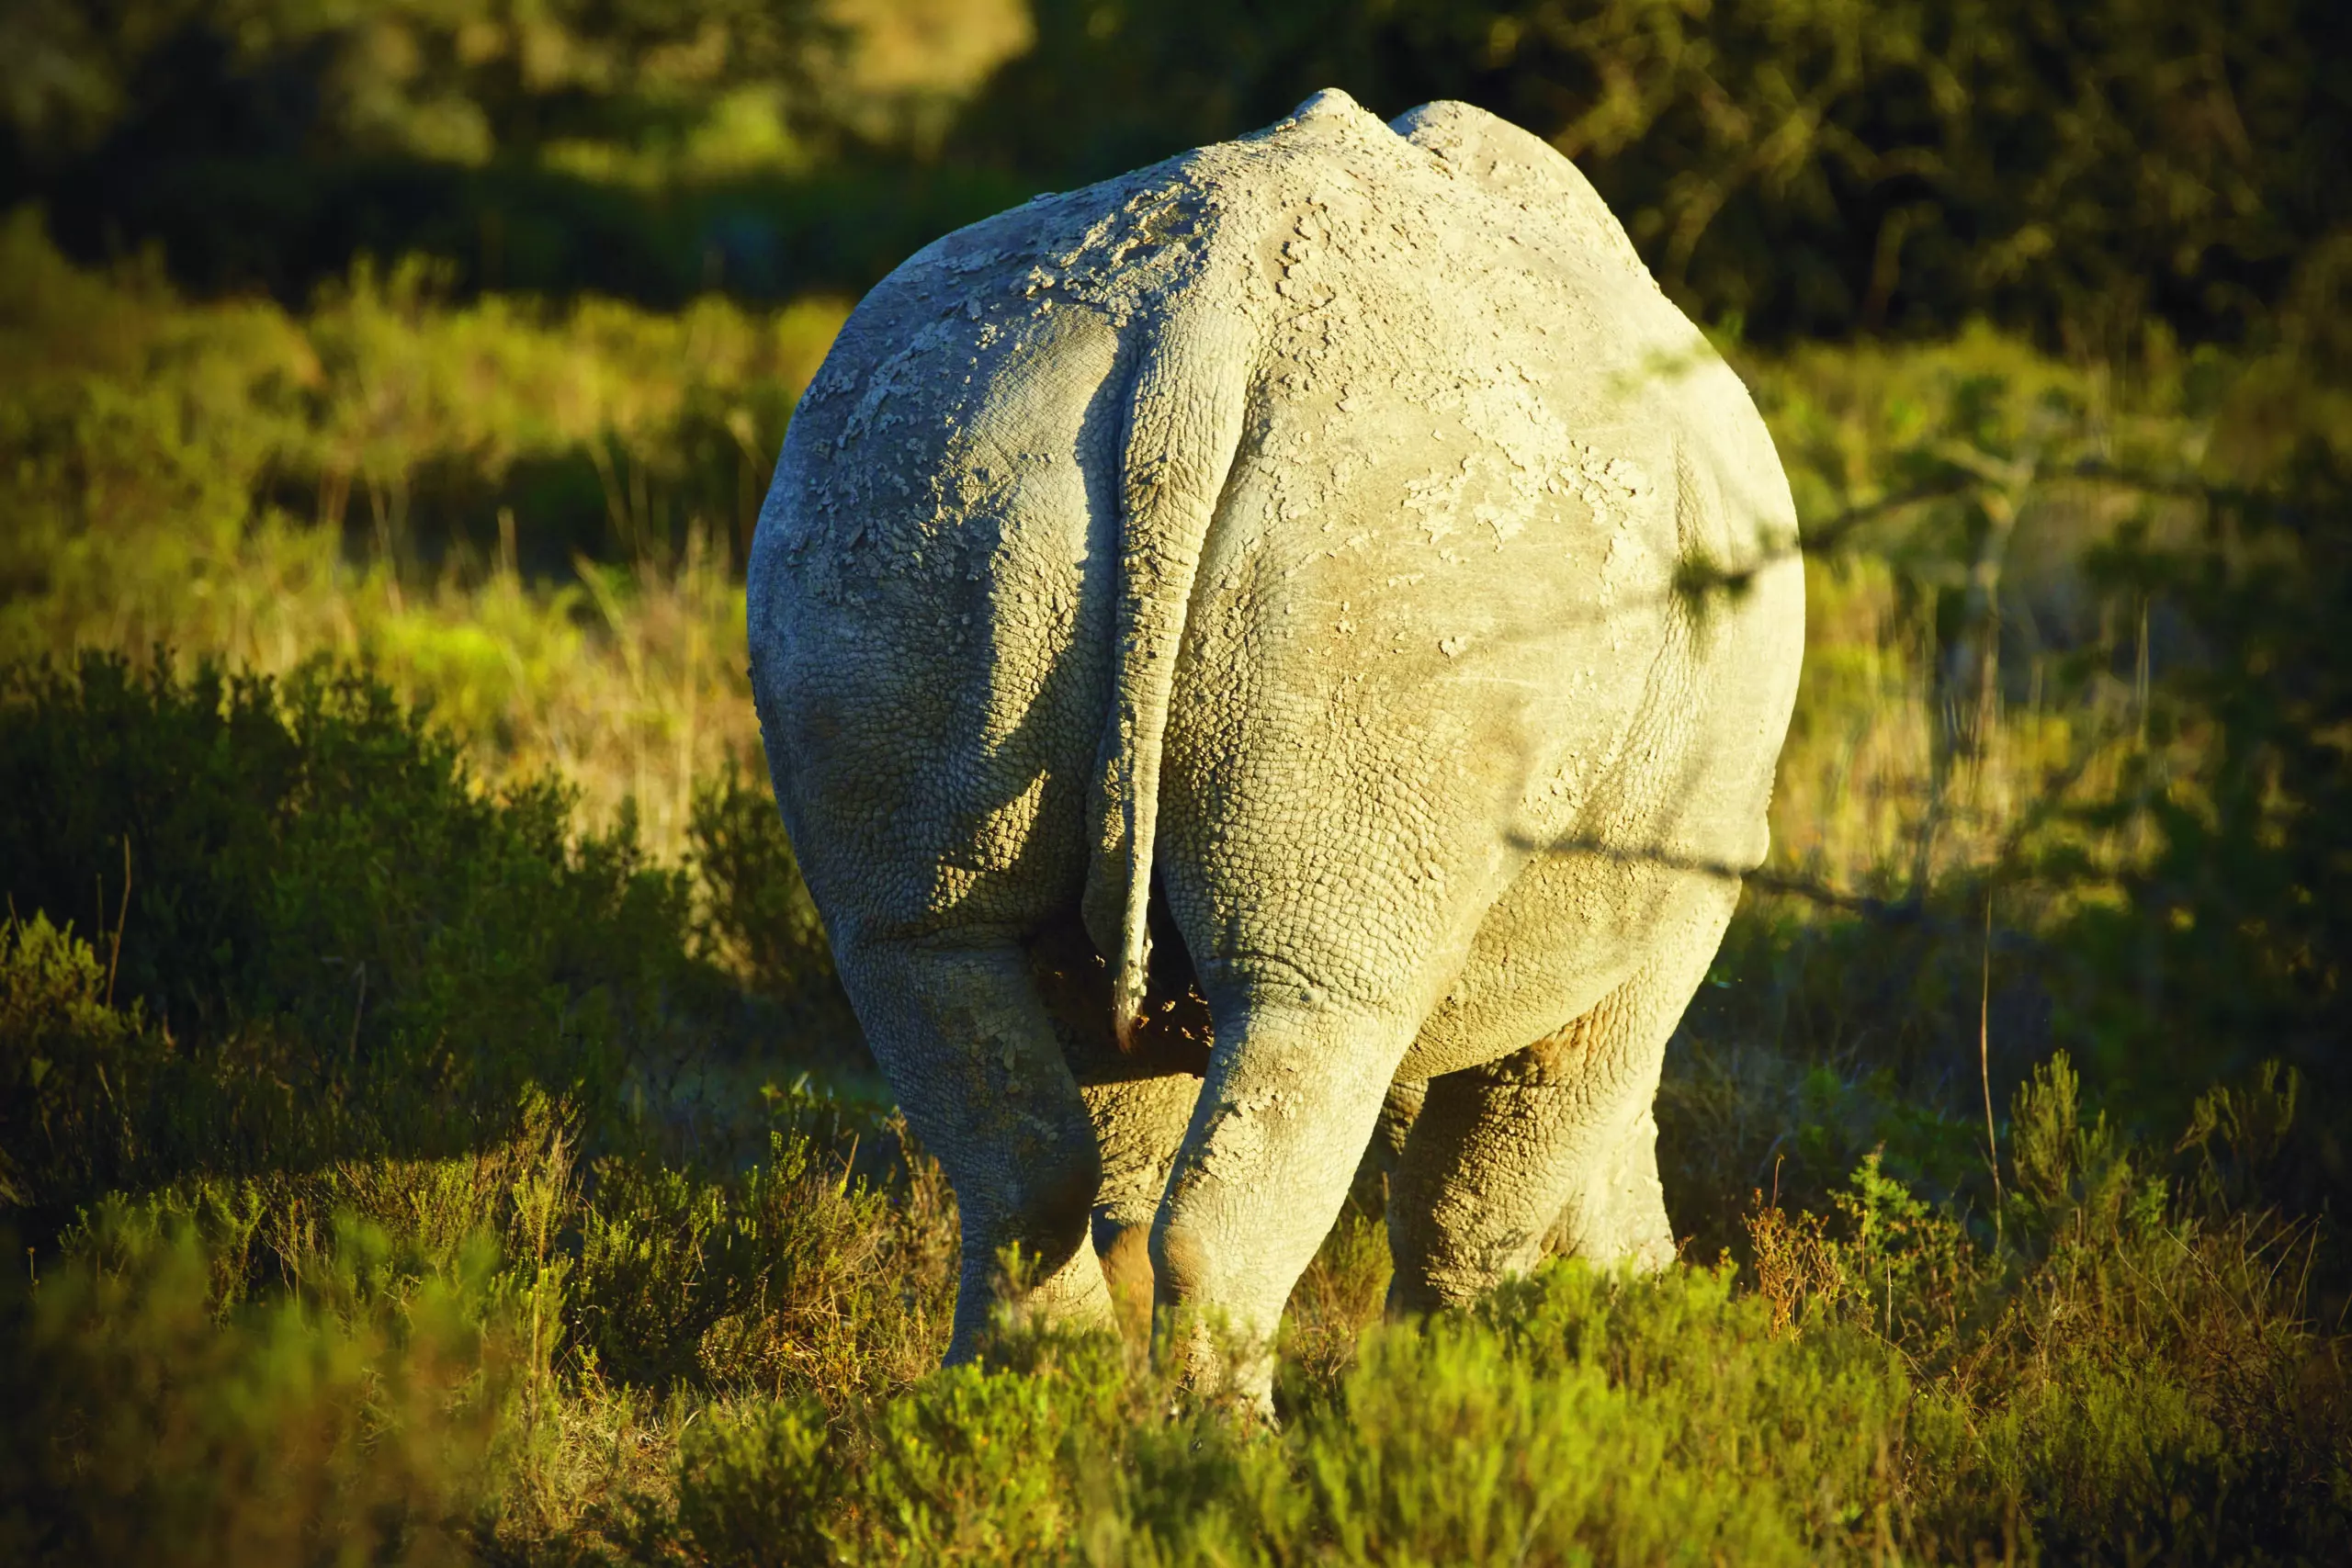 Wandbild (3428) Rhino 1 präsentiert: Tiere,Aus Afrika